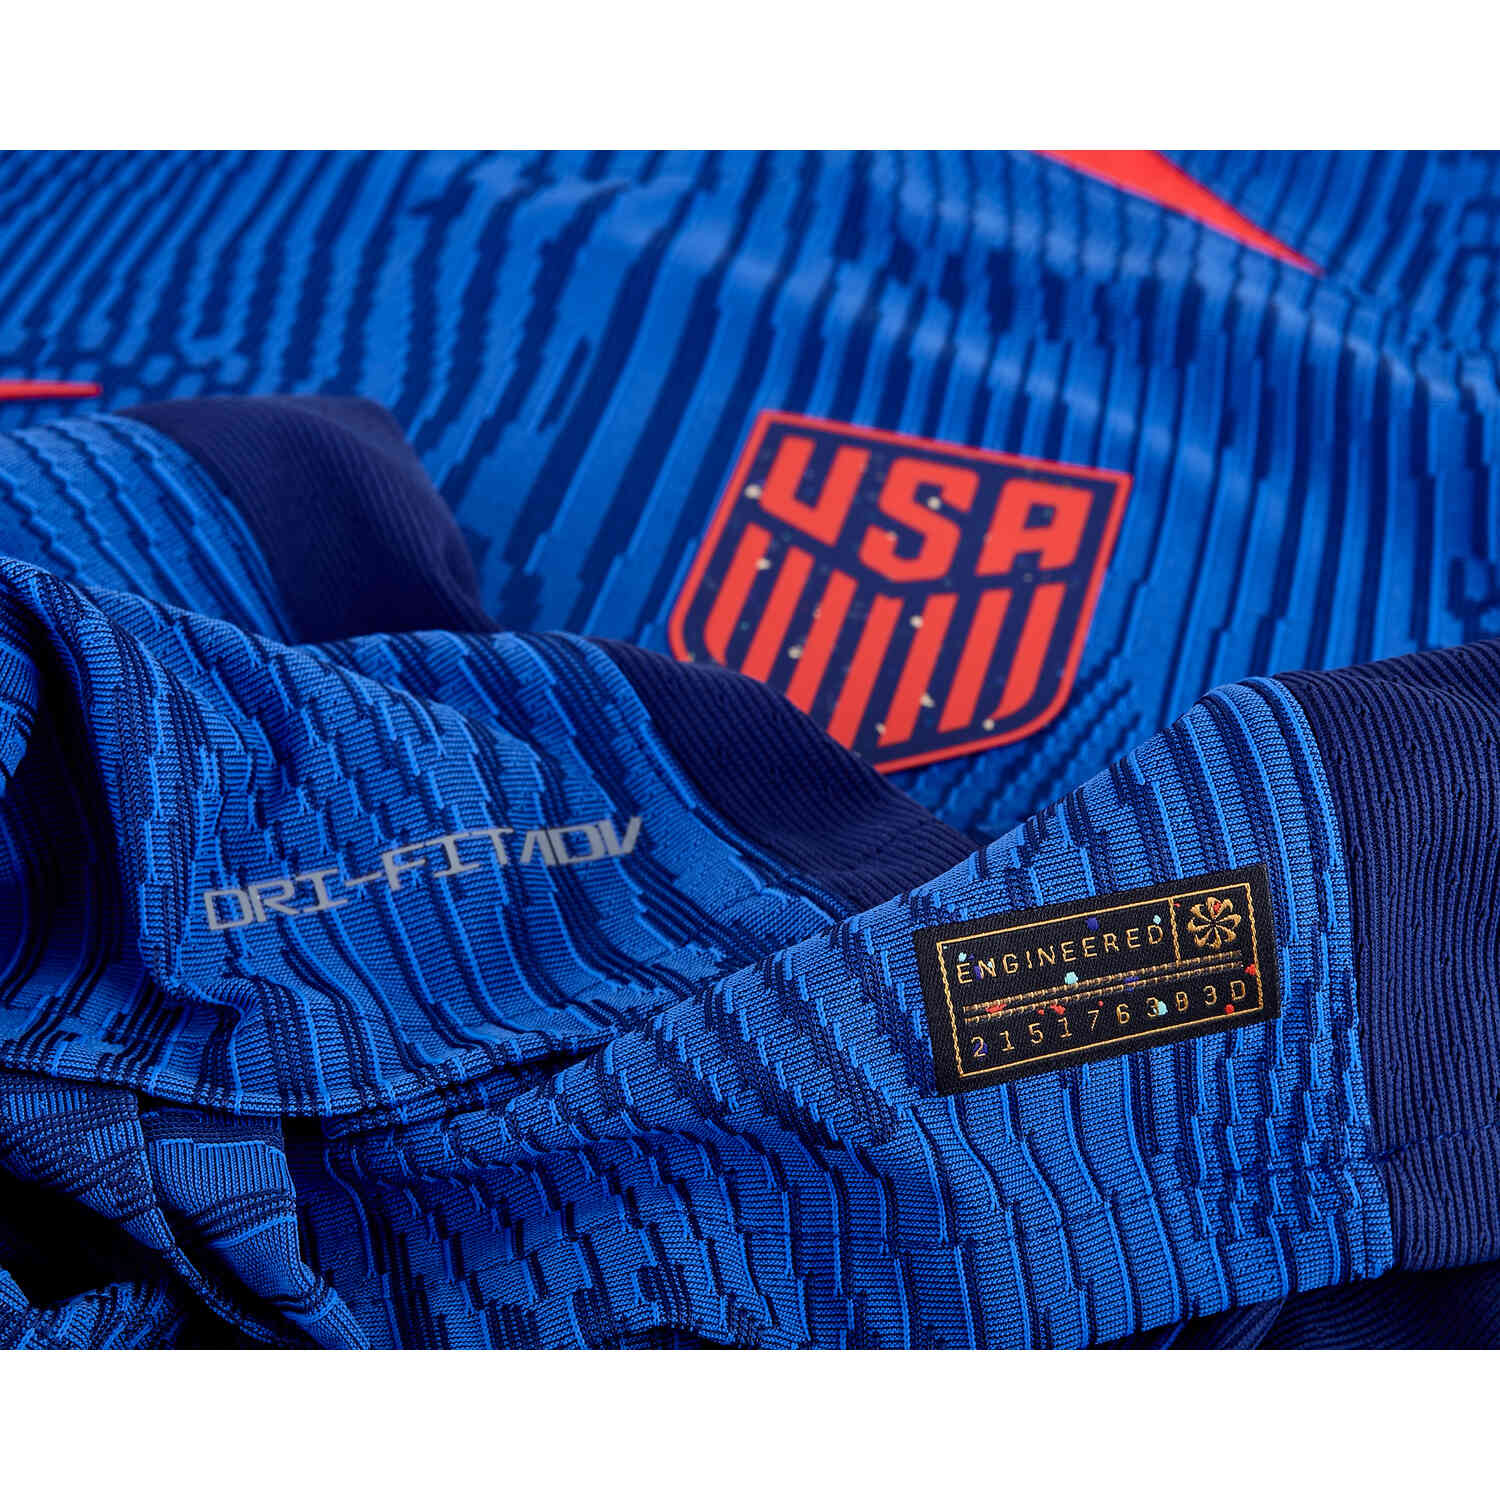 2023 Nike USA Away Match Jersey